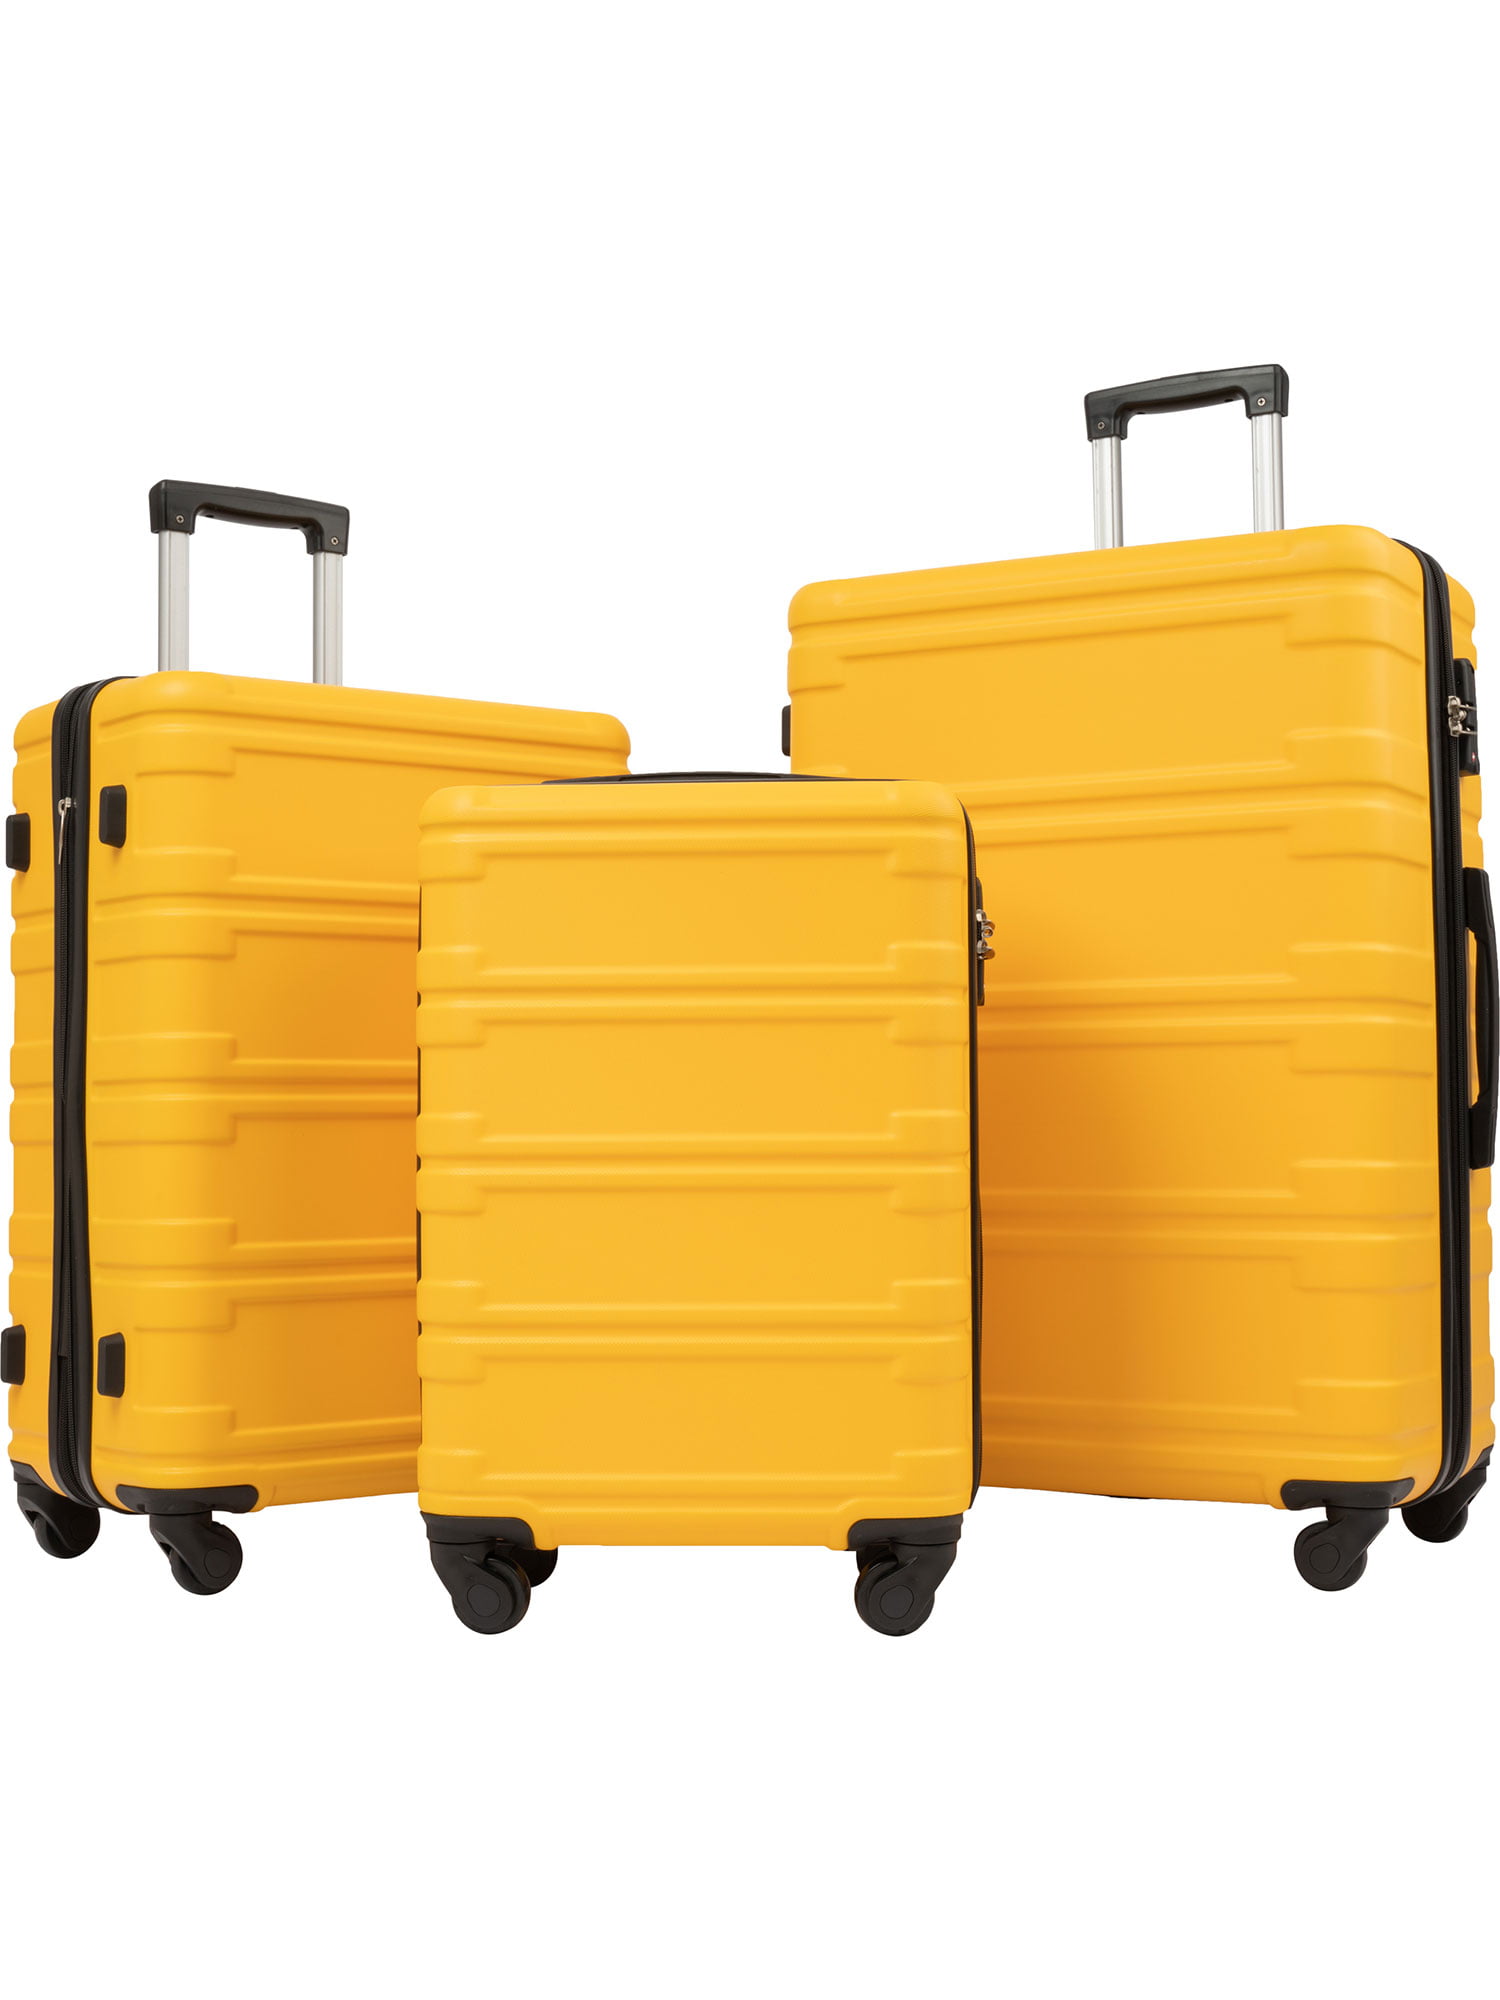 Piece Luggage Set Hardside Spinner Suitcase With TSA Lock 20 24' 28 ...